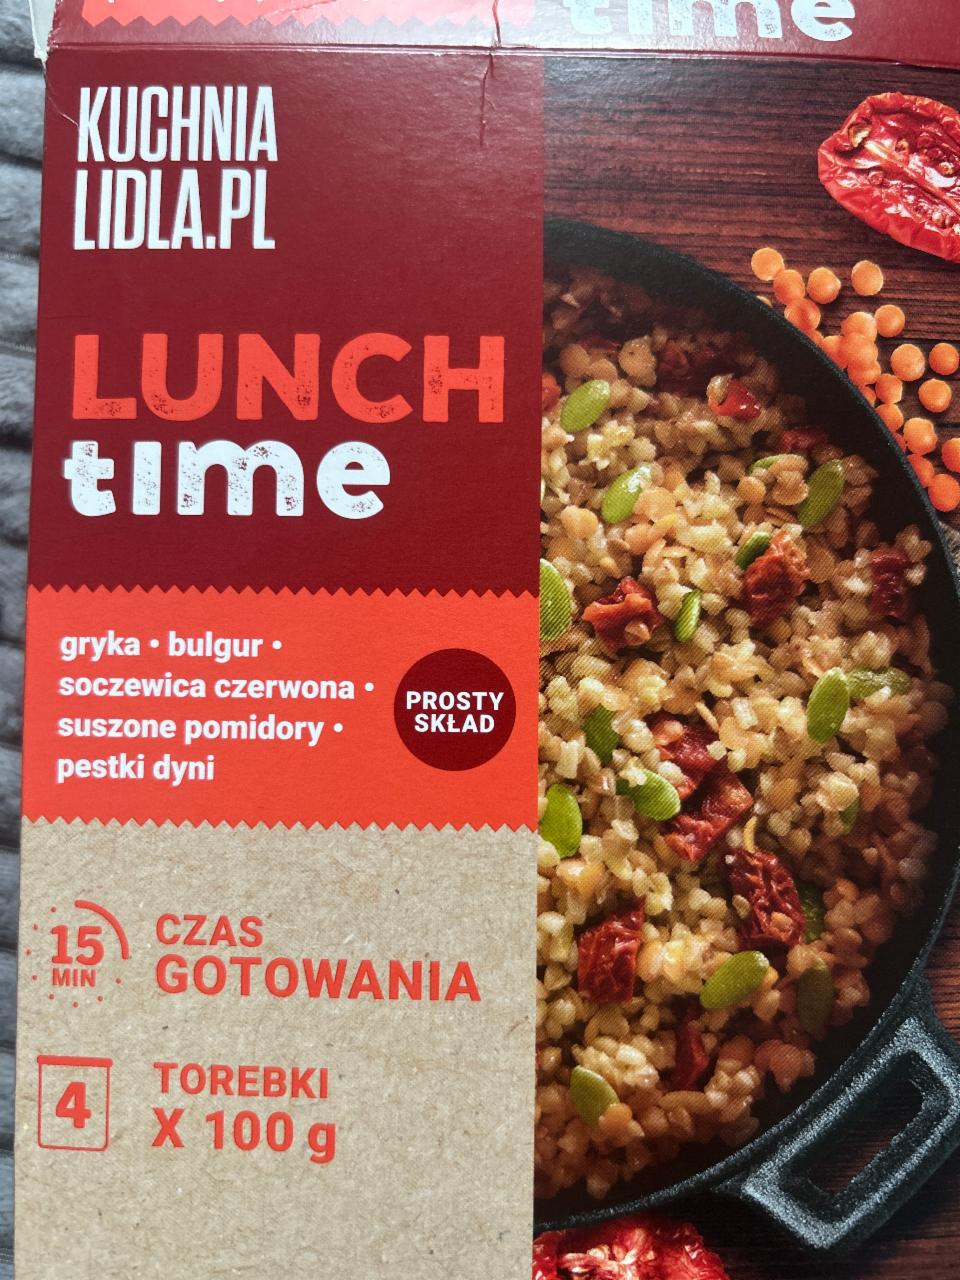 Fotografie - Lunch time gryka-bulgur-soczewica czerwona-suszone pomidory-pestki dyni Kuchnia Lidla.Pl